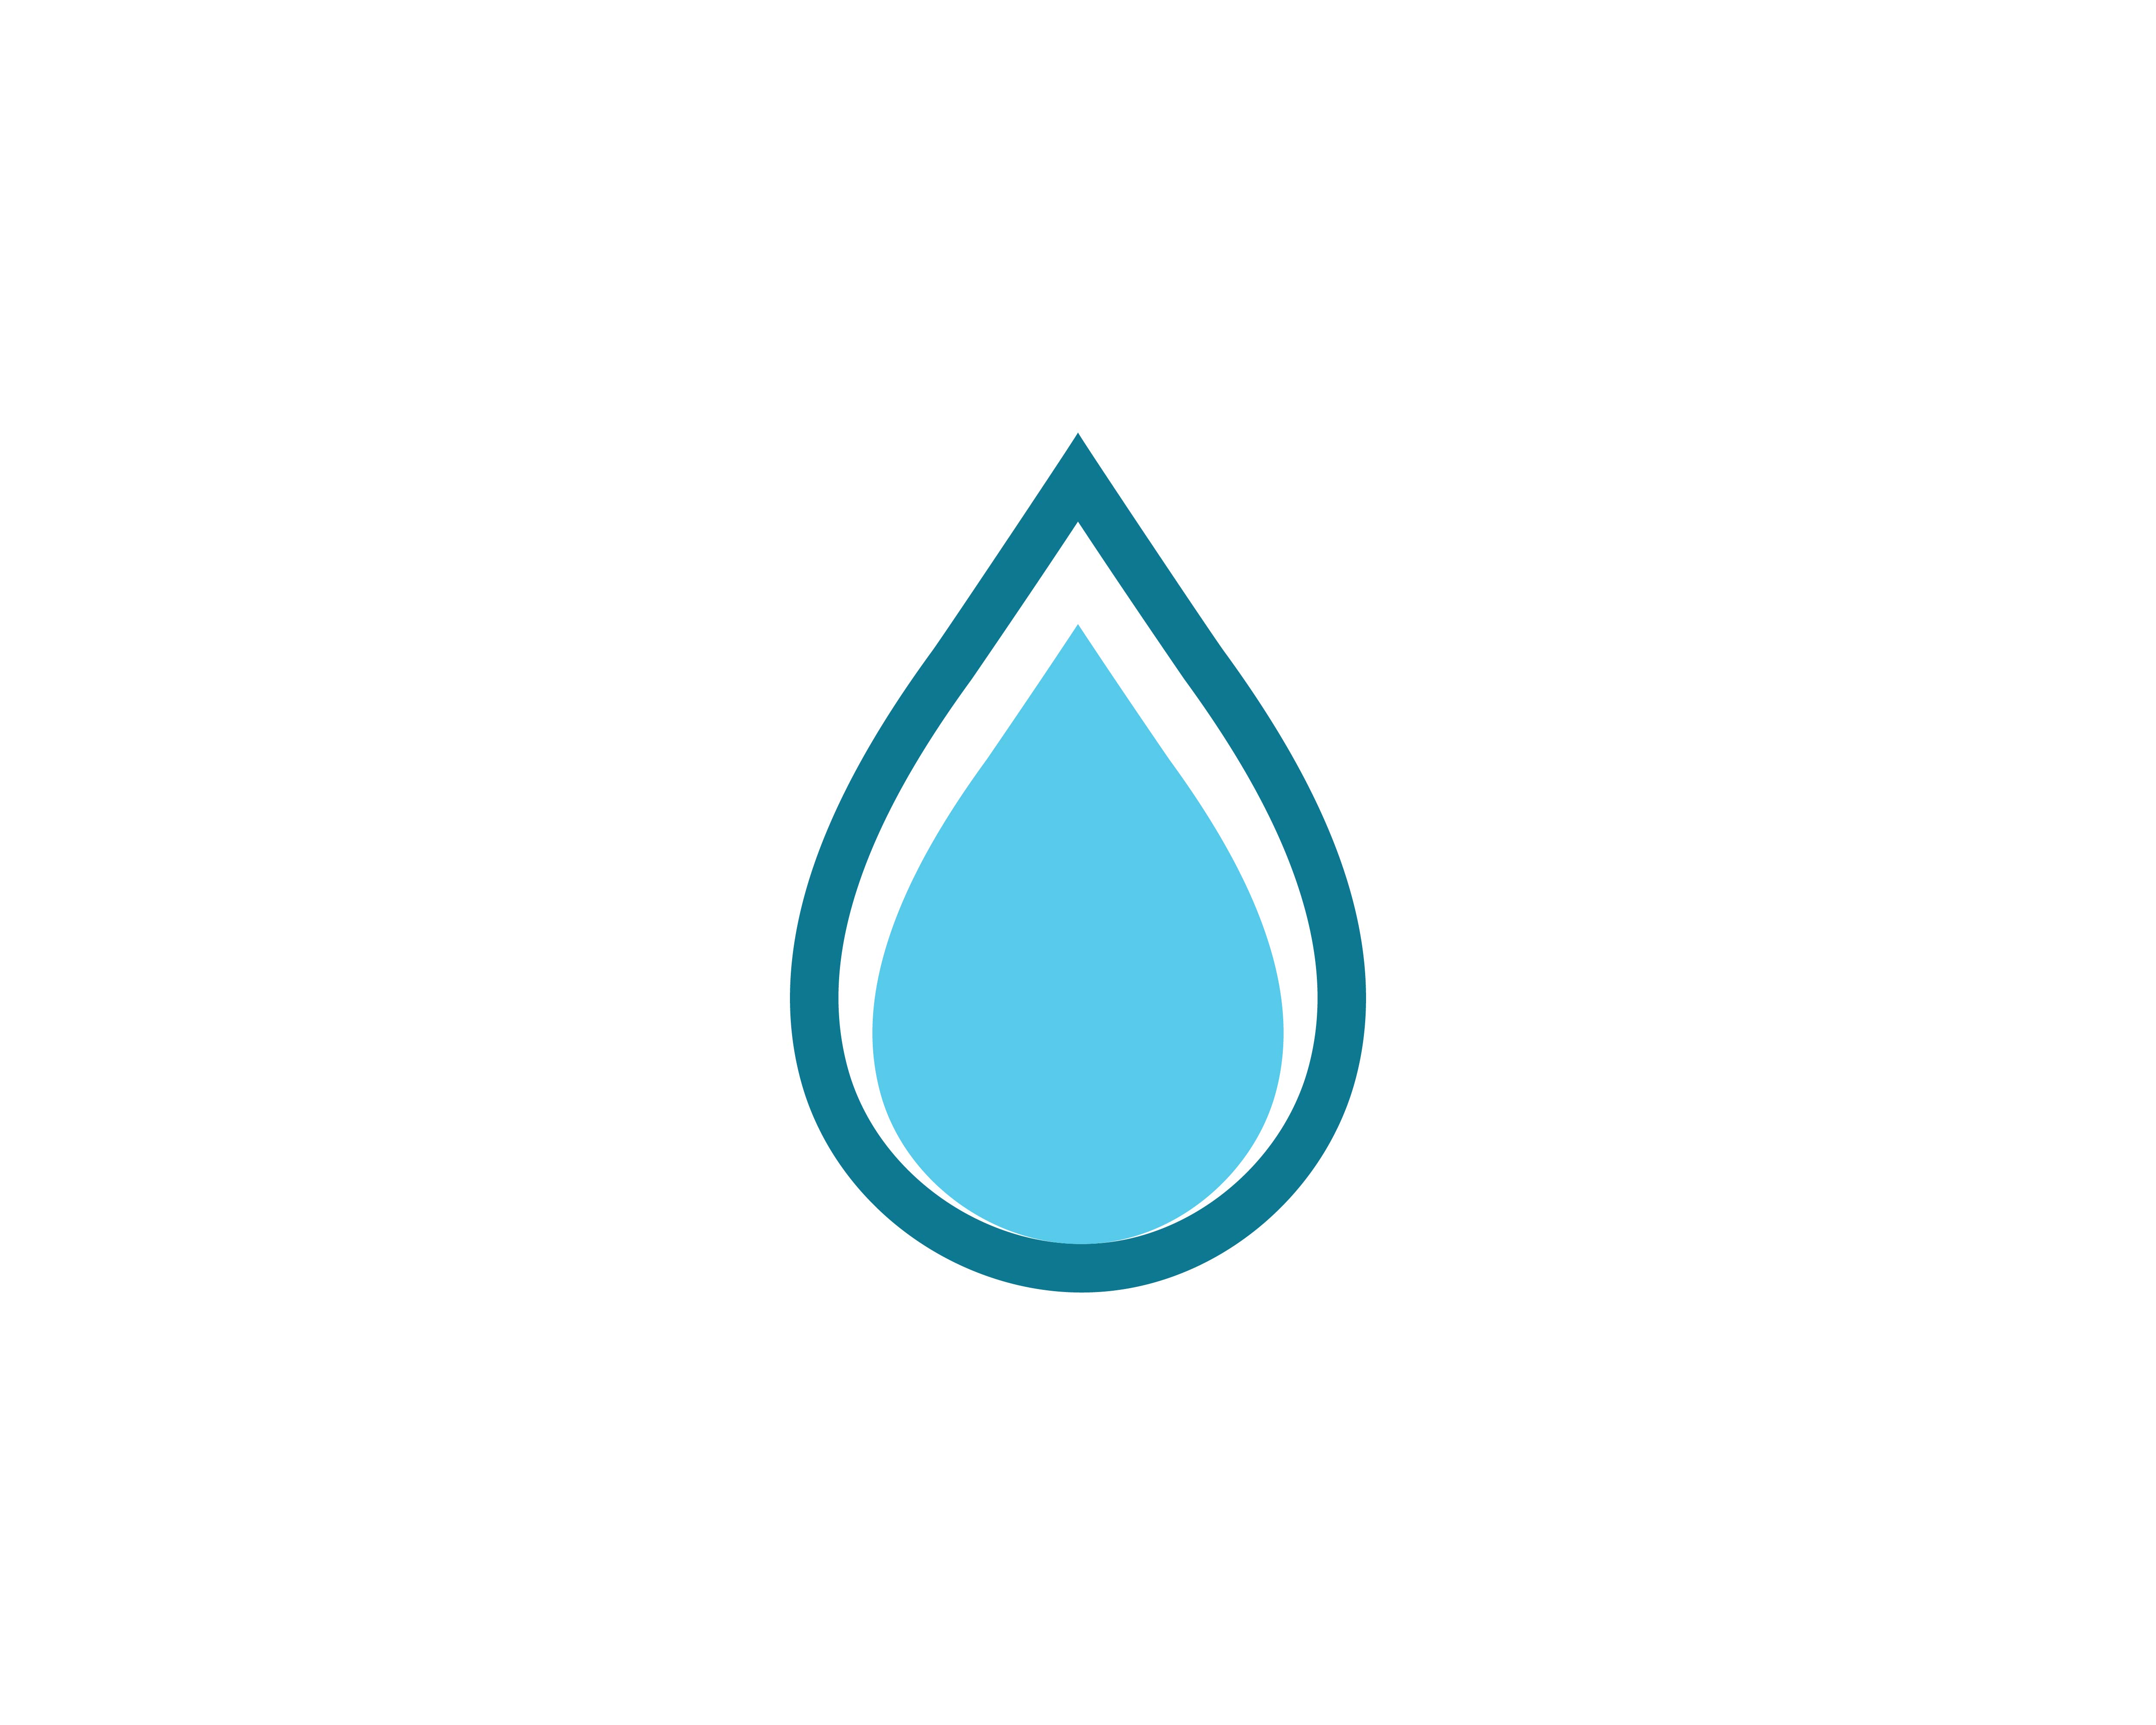 Water Drop Logo Template Vector 596899 Vector Art At Vecteezy